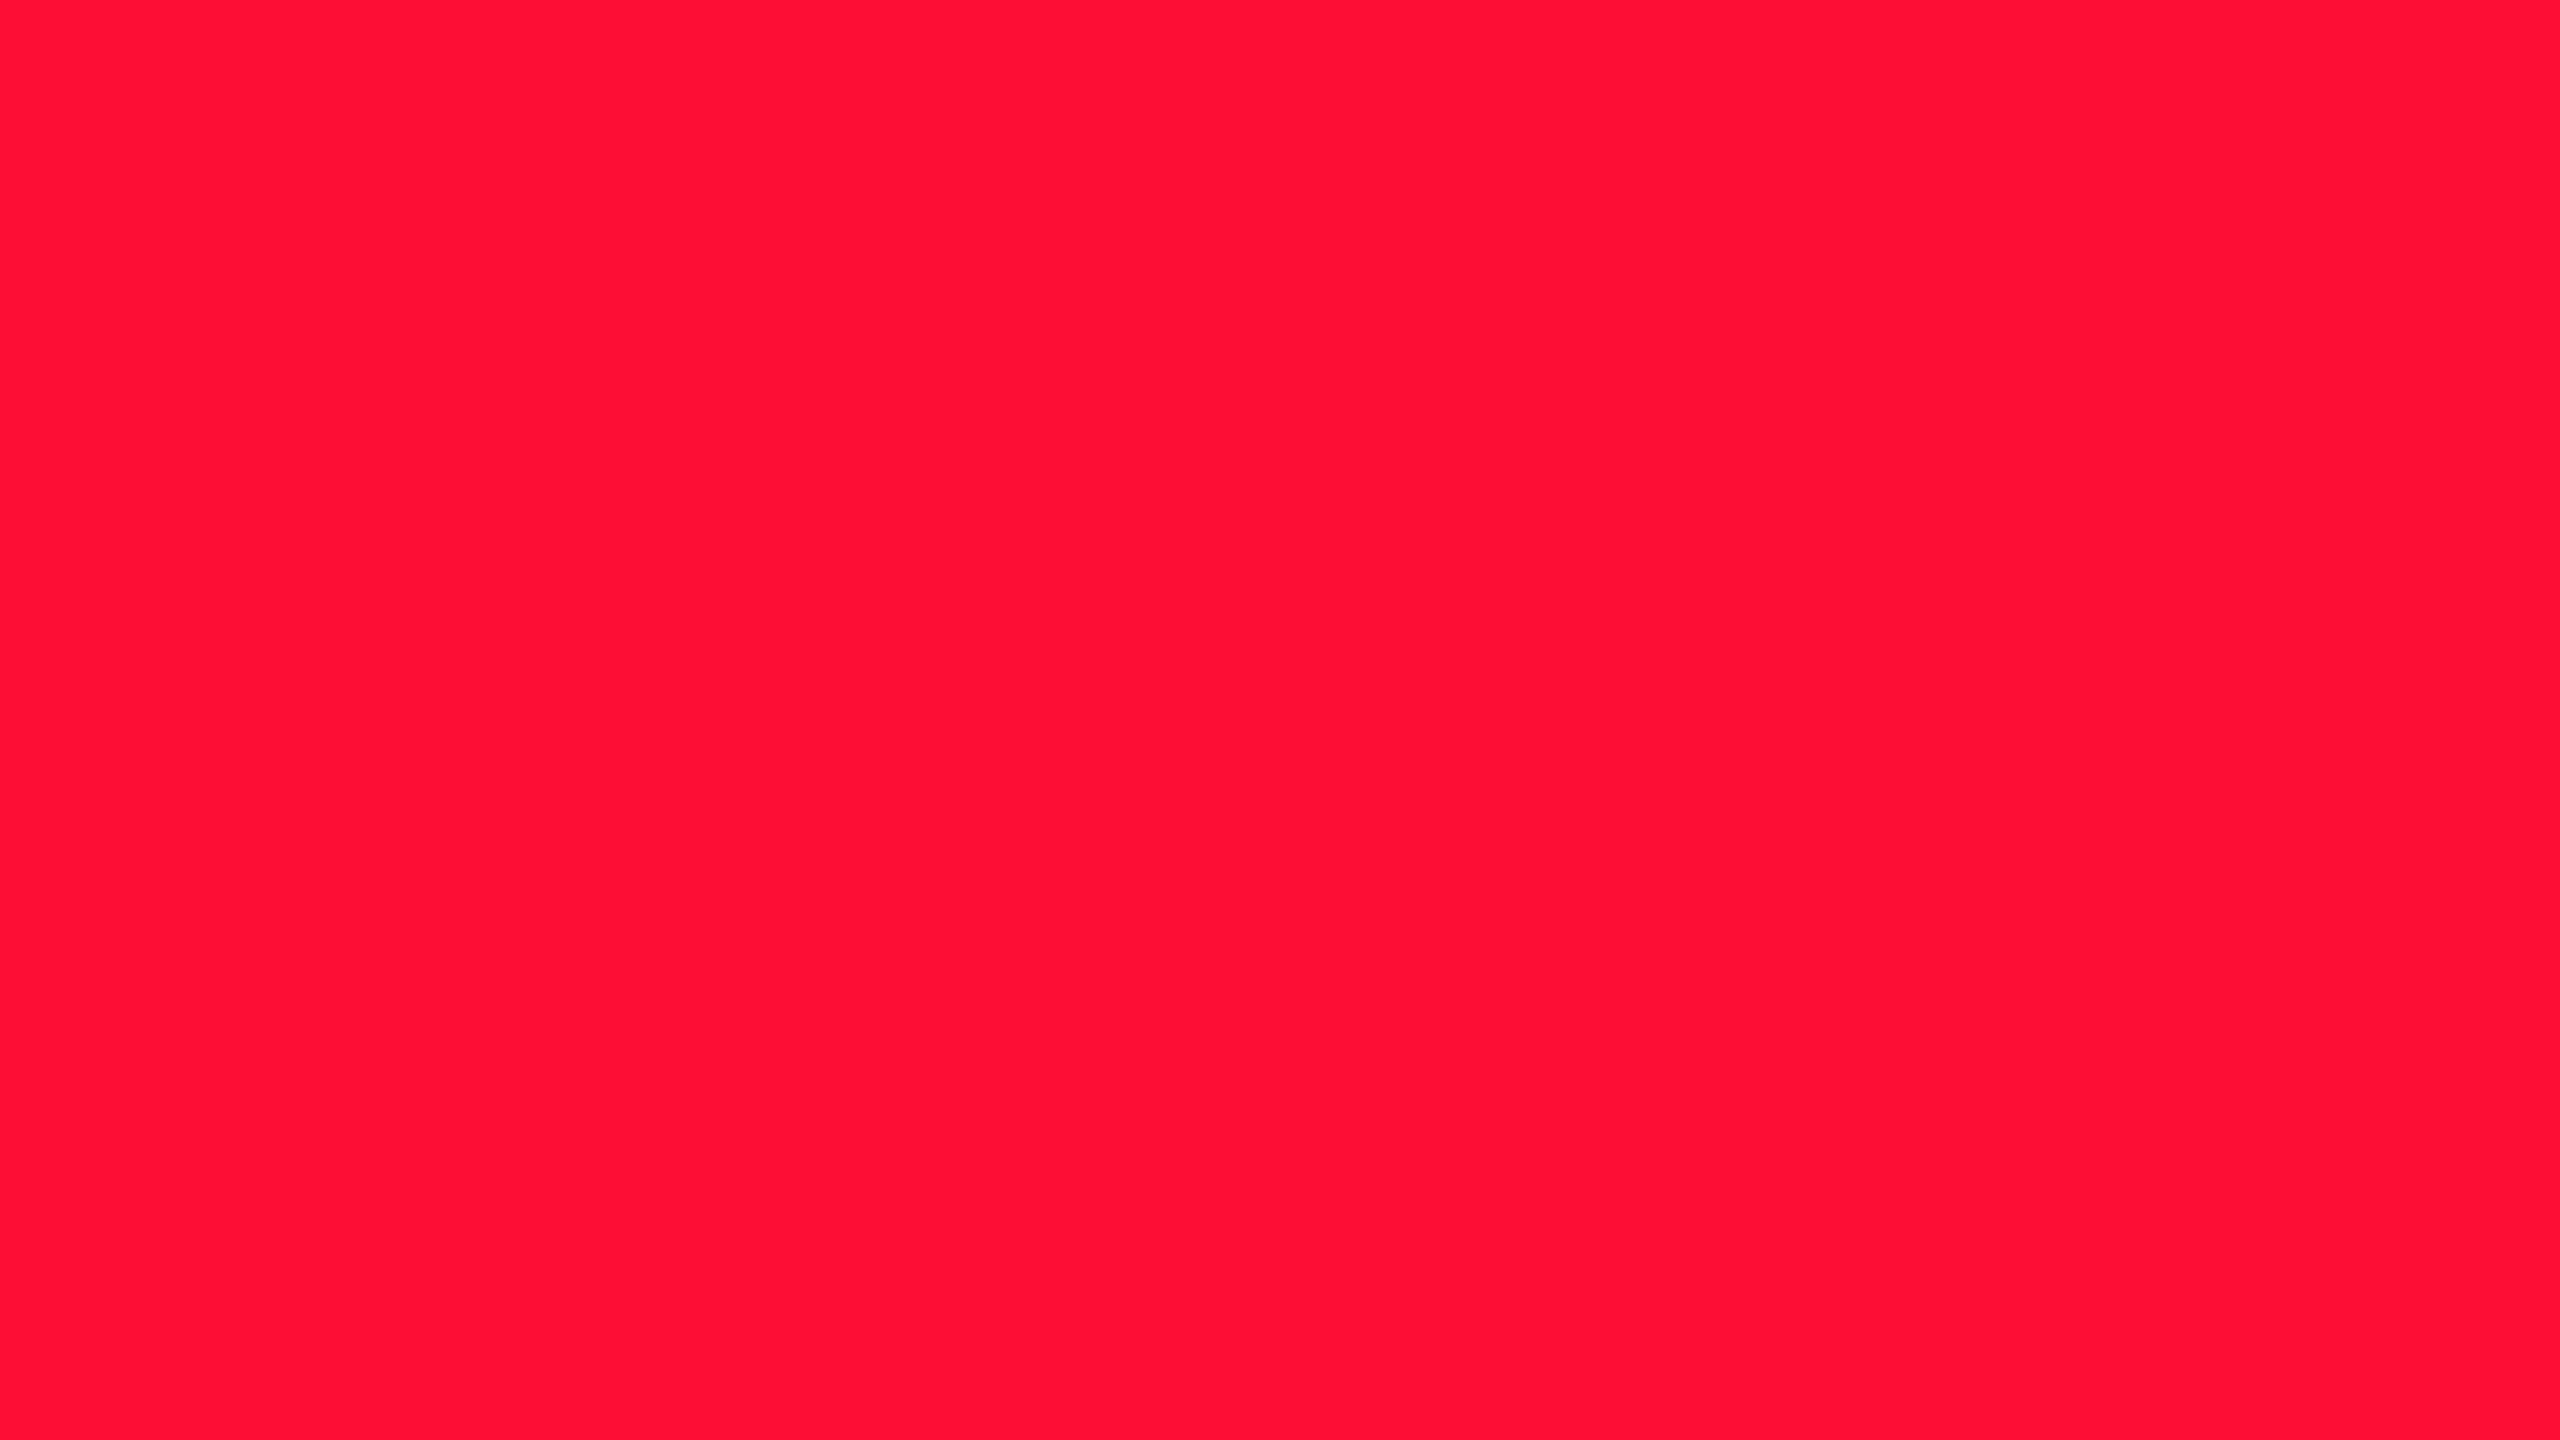 2560x1440 Scarlet Crayola Solid Color Background